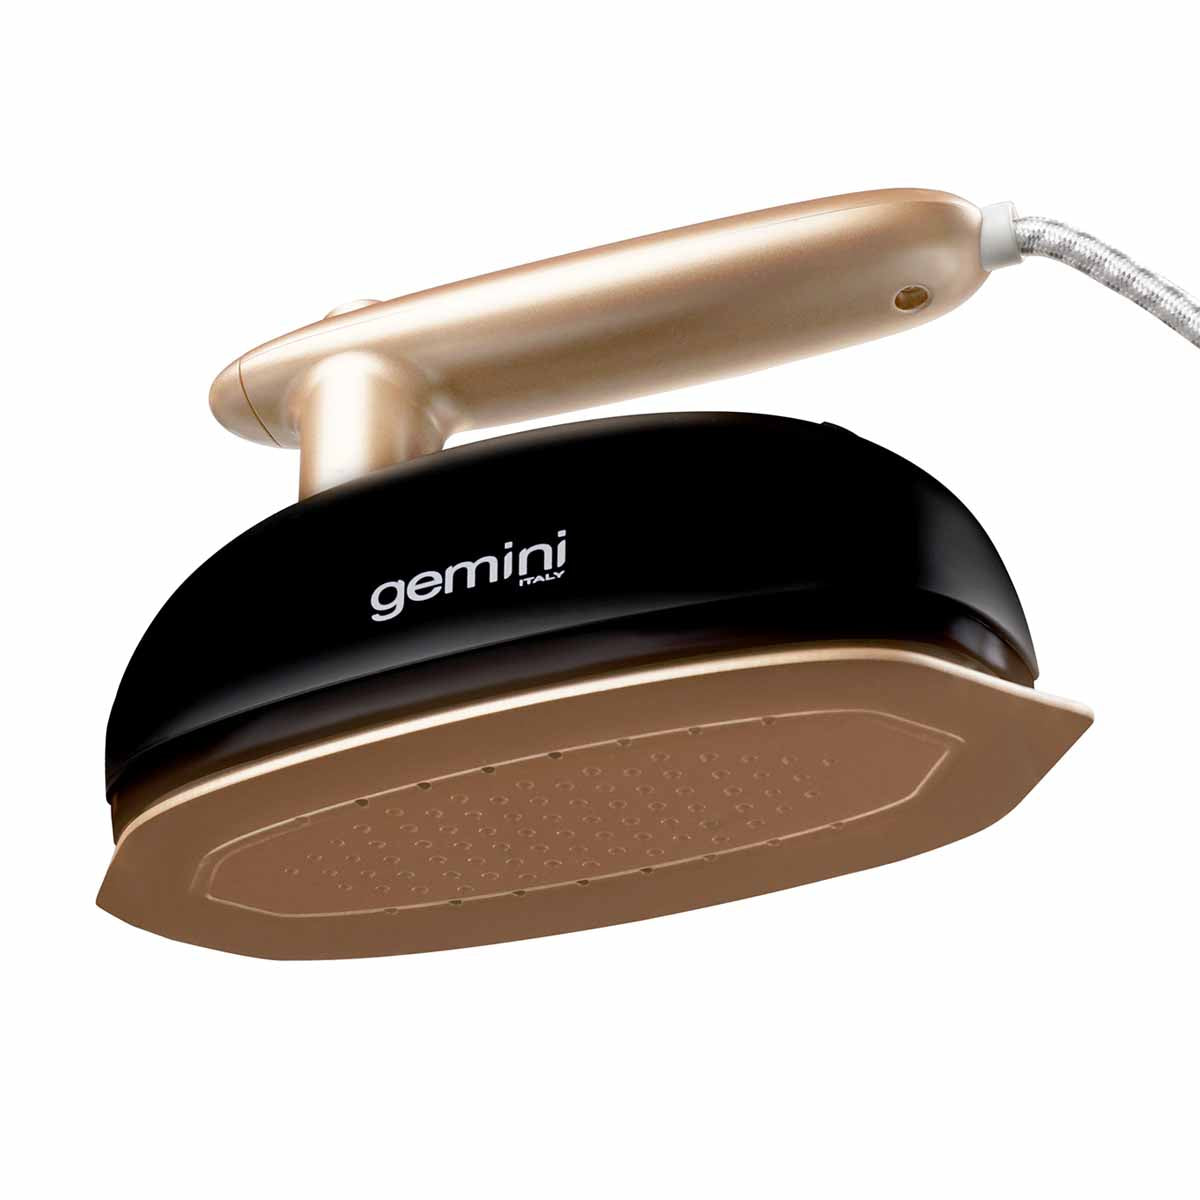 Gemini 兩用手提式蒸氣掛燙機 GGS180